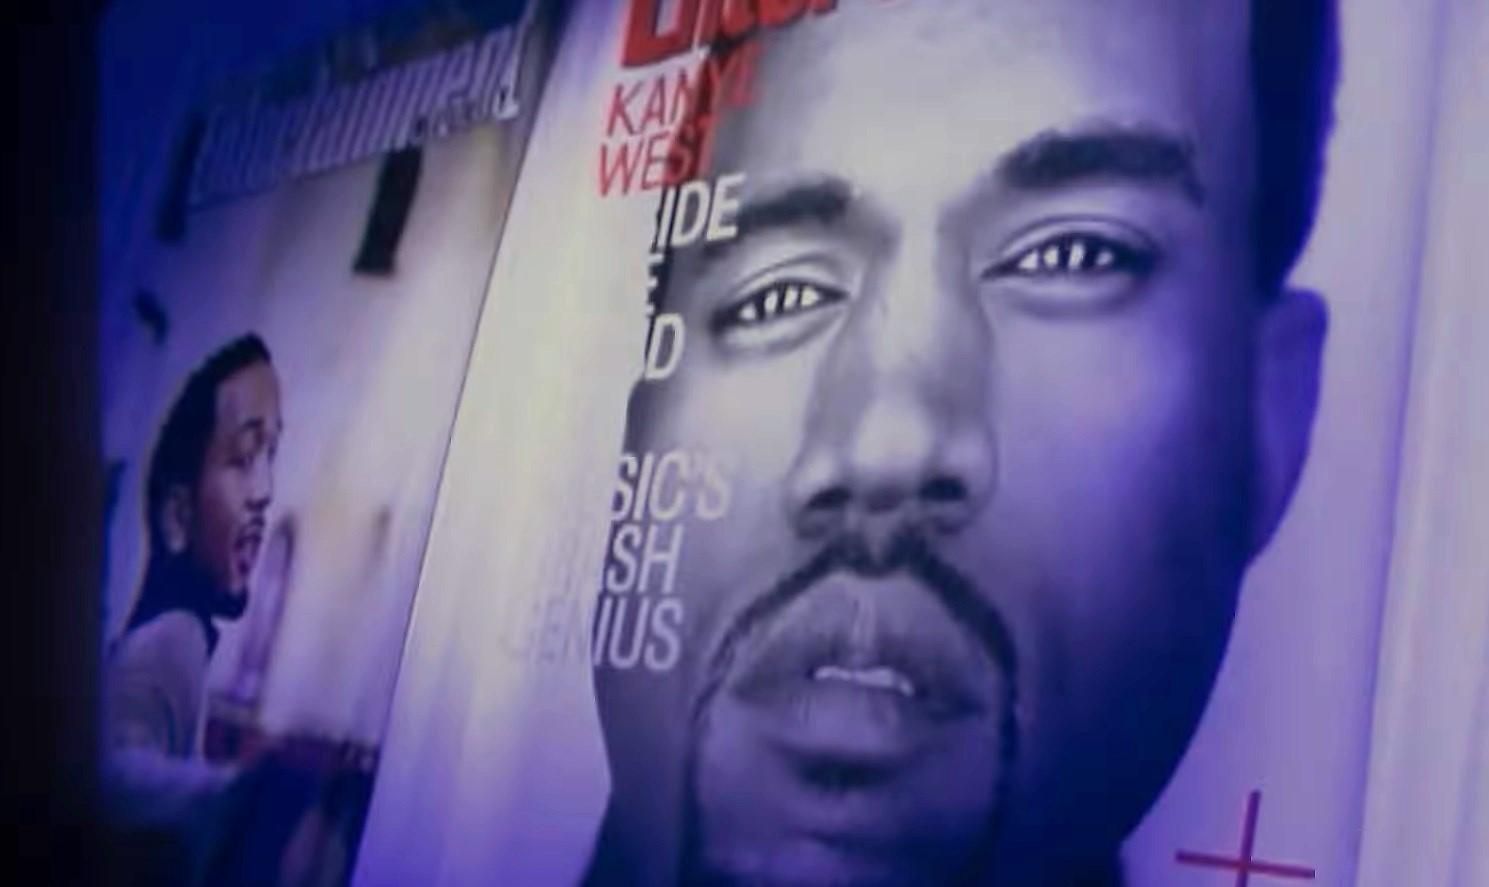 Каньє Вест на Netflix : у мережі з'явився трейлер документального фільму про скандального репера - Кіно